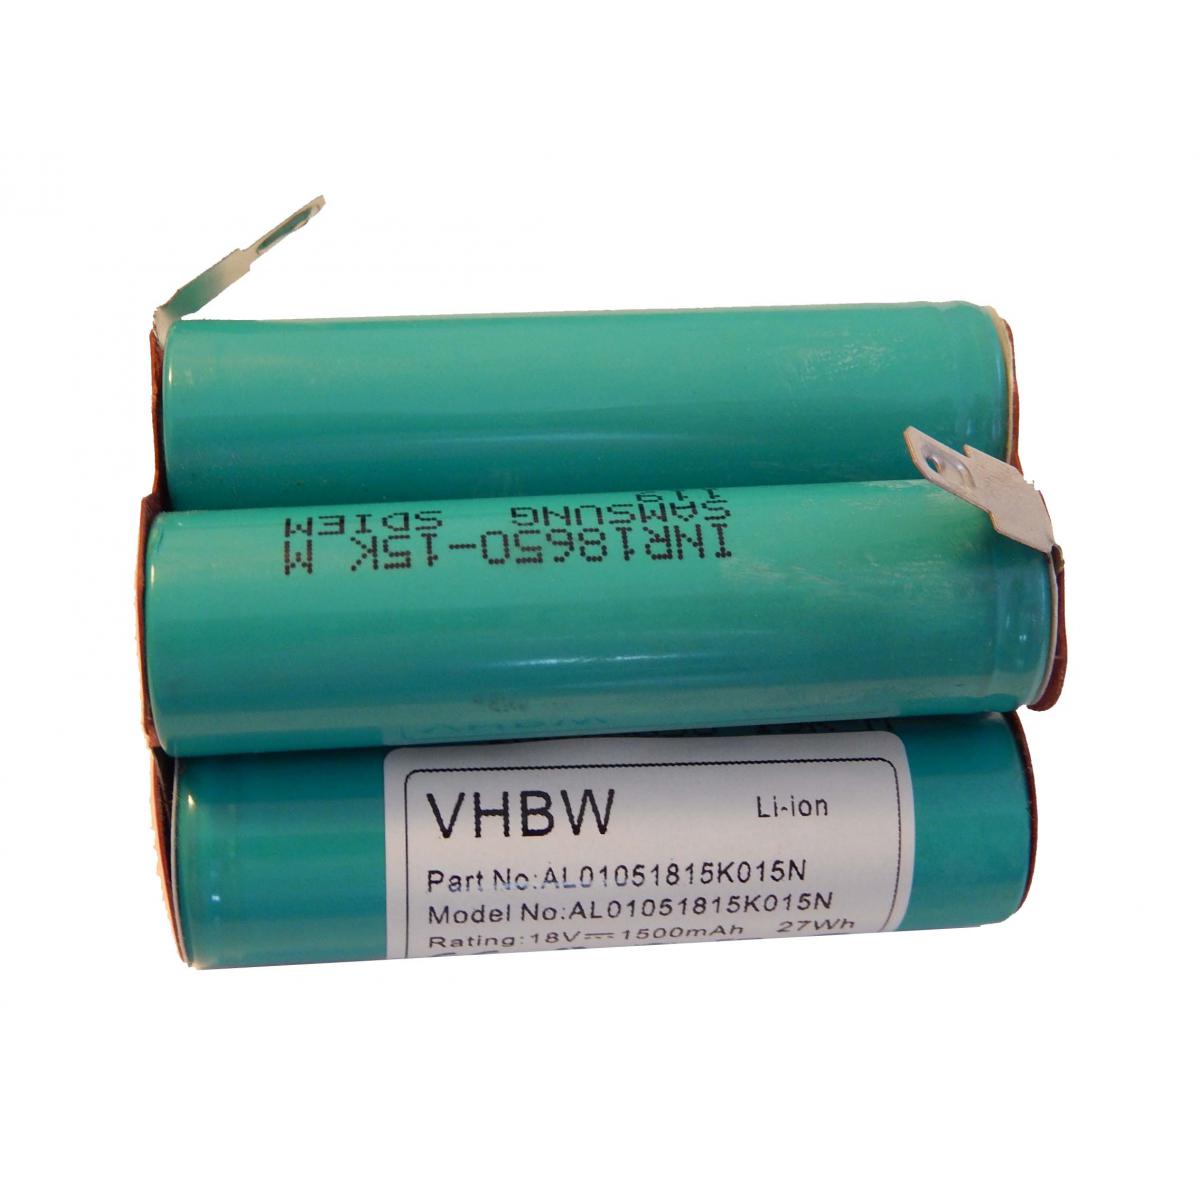 Vhbw - vhbw Li-Ion batterie 1500mAh (18V) pour tondeuse robot scie Gardena 02417-20, turbo-scie AccuCut 2417 comme 2417-00.610.00. - Accessoires tondeuses